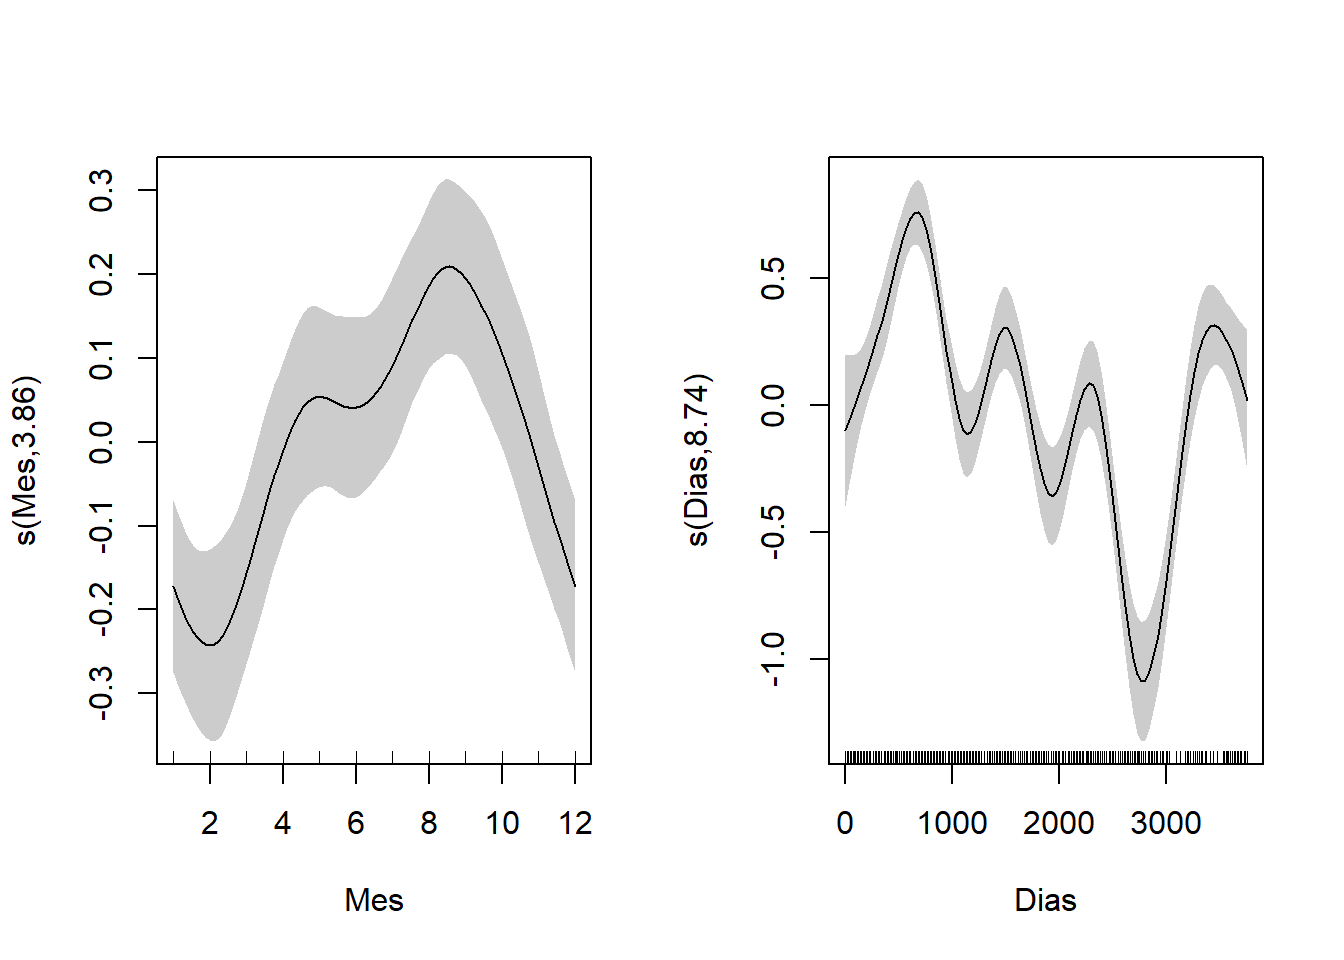 Efectos parciales del modelo 1. Las curvas suaves se centraron en cero, se indican los intervalos de confianza de 95% en gris. Las líneas internas en los ejes x (Mes y Dias) representan los datos.